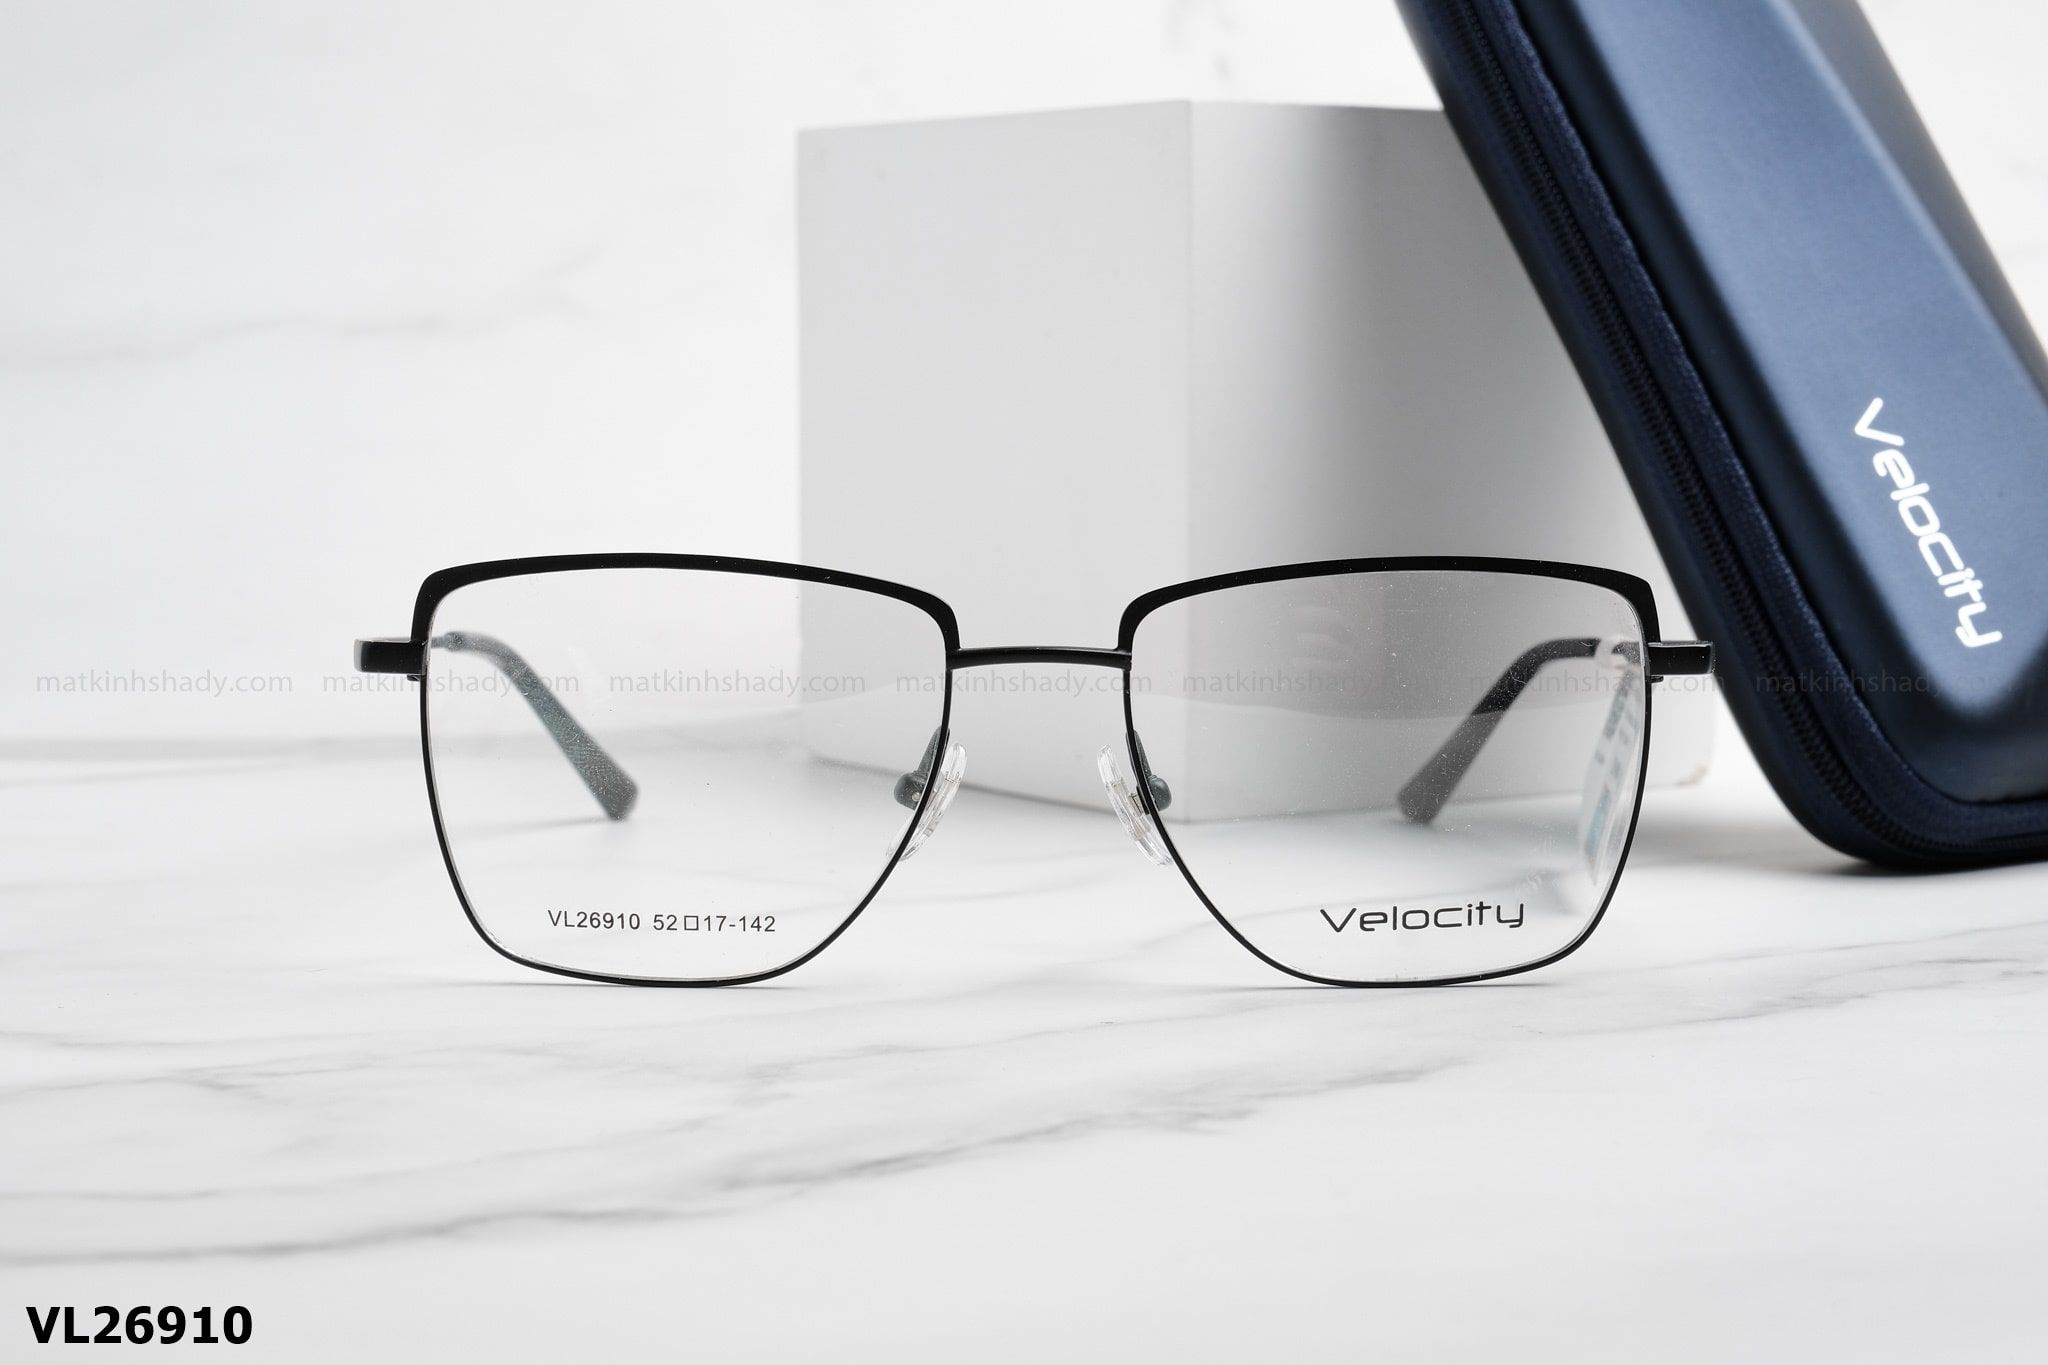  Velocity Eyewear - Glasses - VL26910 